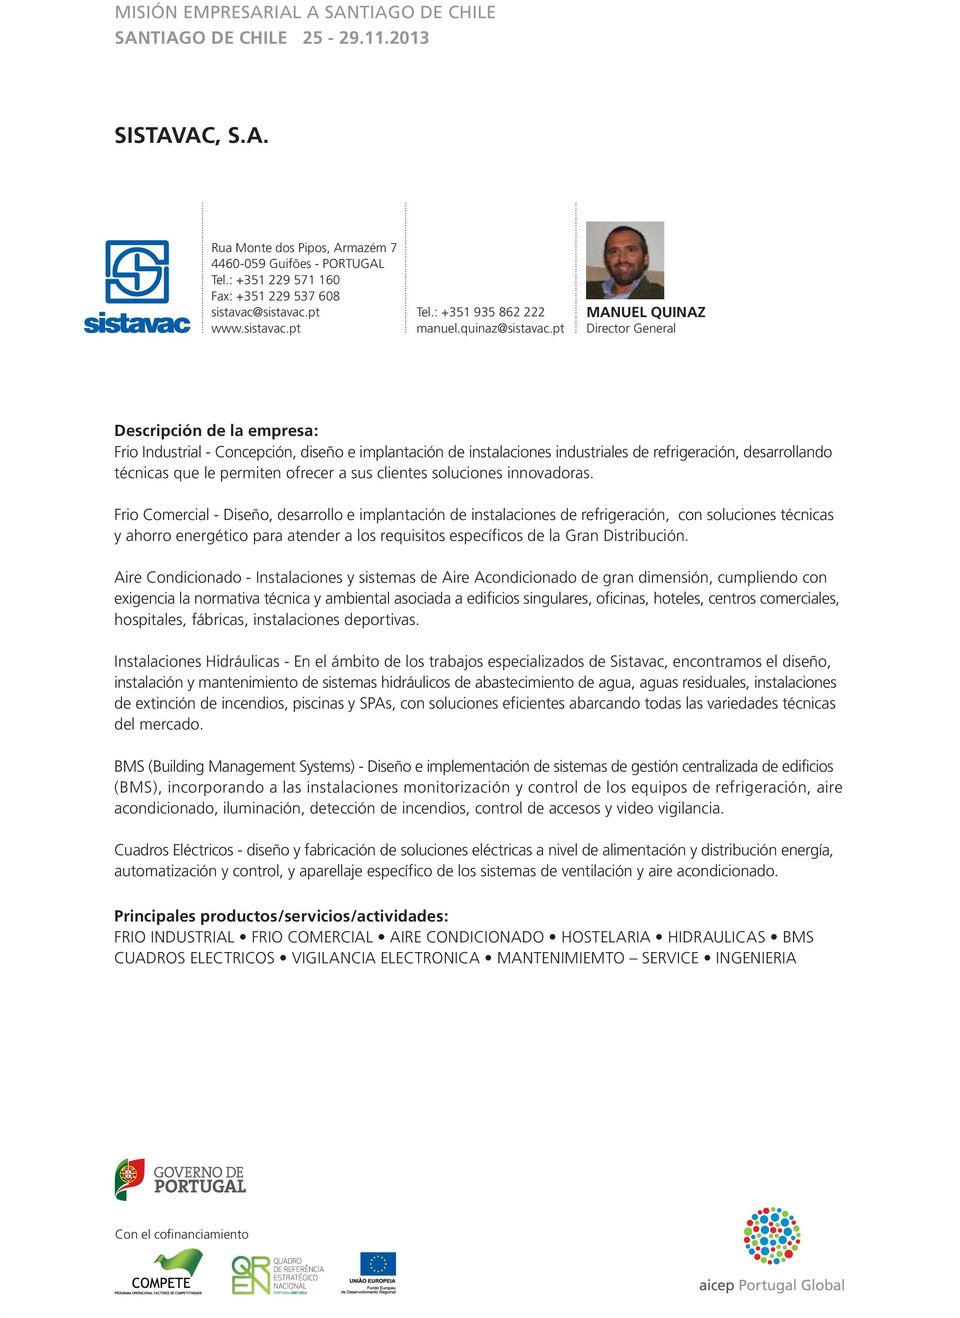 pt MANUEL QUINAZ Director General Frio Industrial - Concepción, diseño e implantación de instalaciones industriales de refrigeración, desarrollando técnicas que le permiten ofrecer a sus clientes